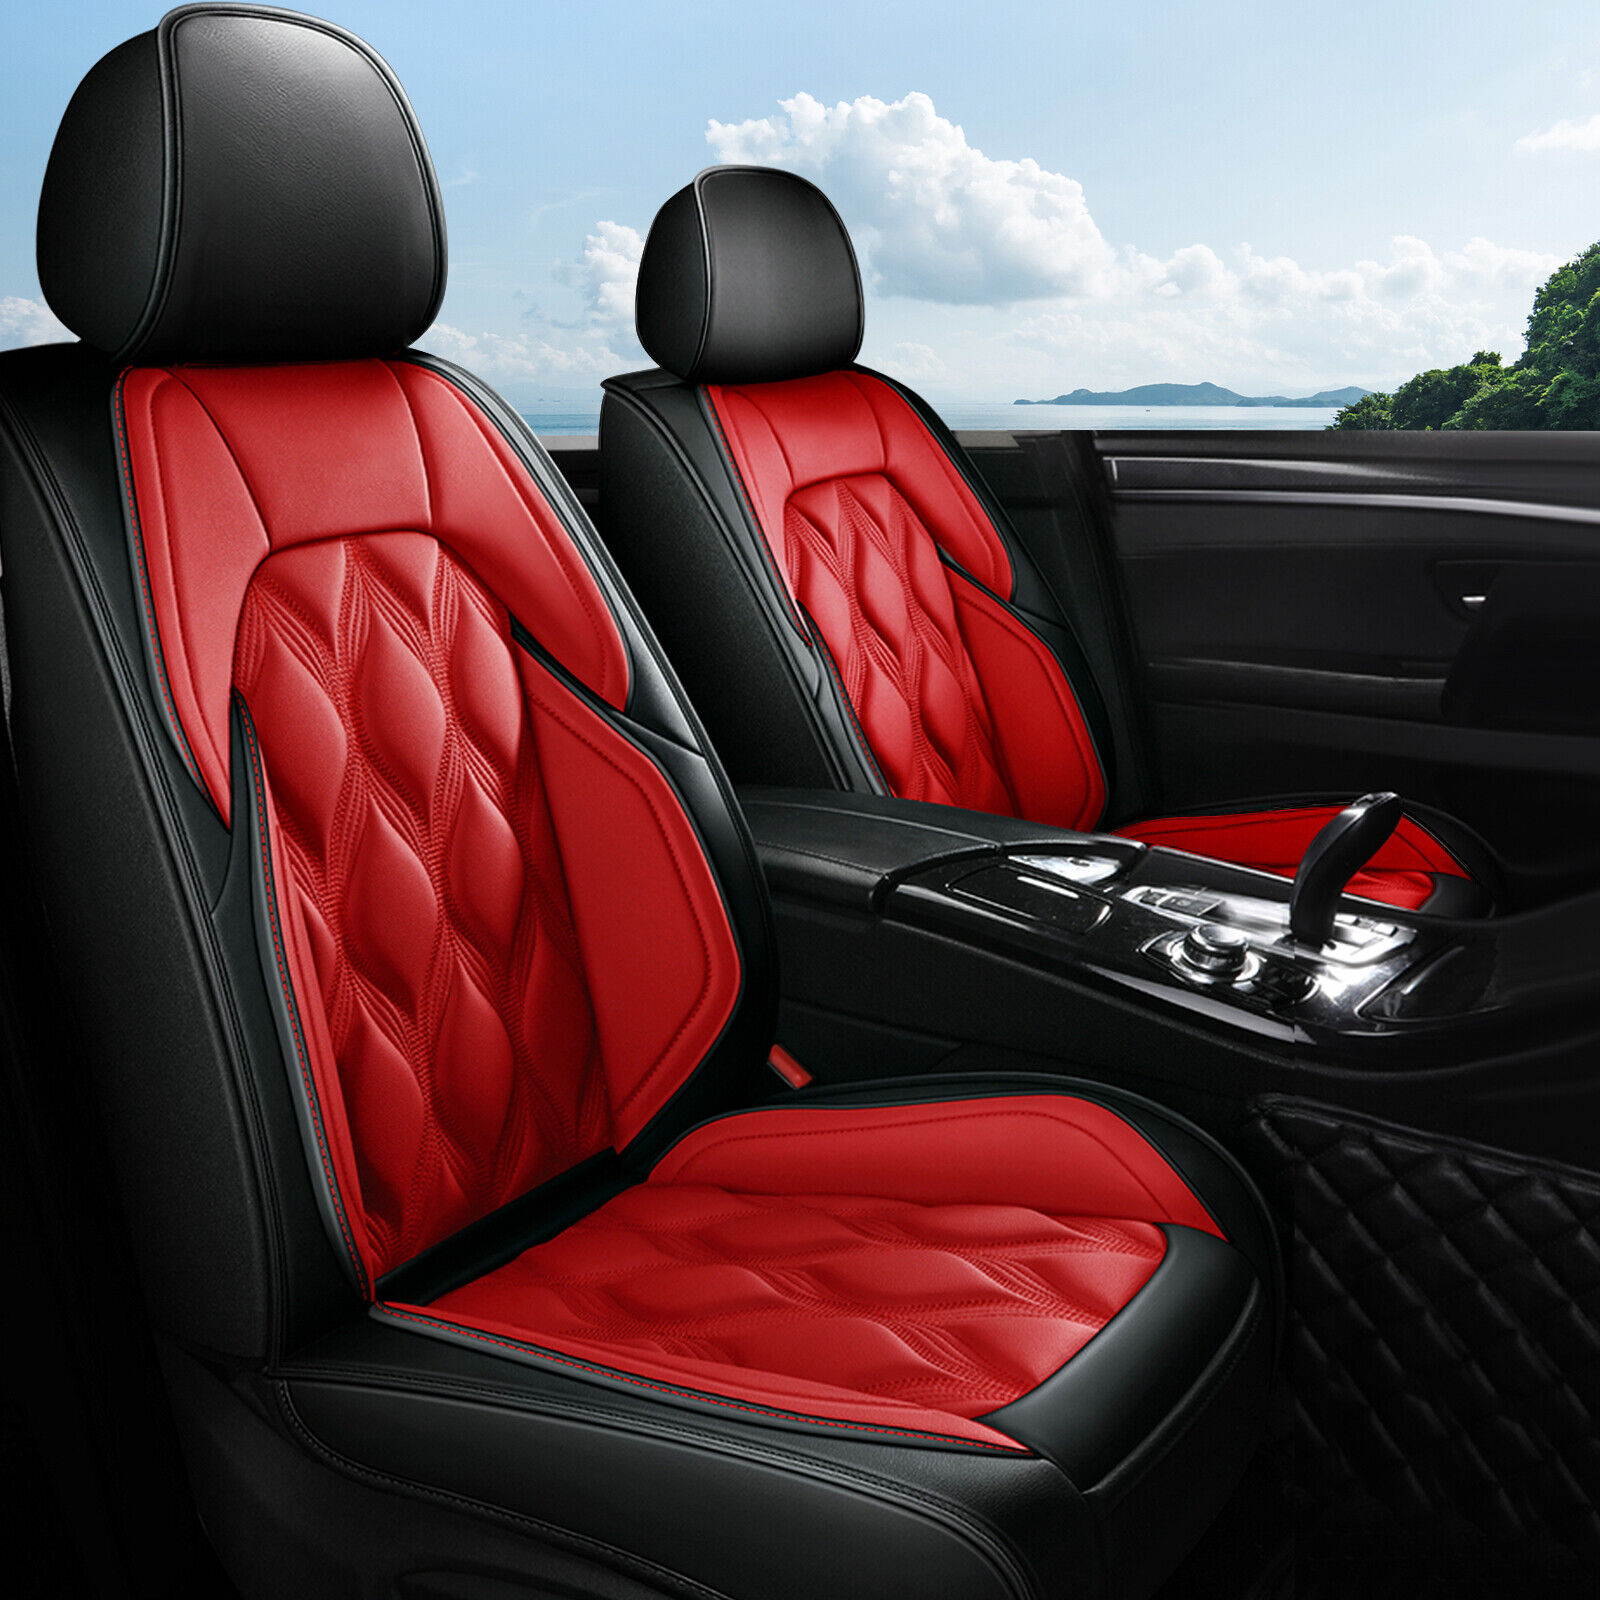 Full Set Seat Cover Protector Cushion PU Leather For Hyundai Sonata 2015-2019